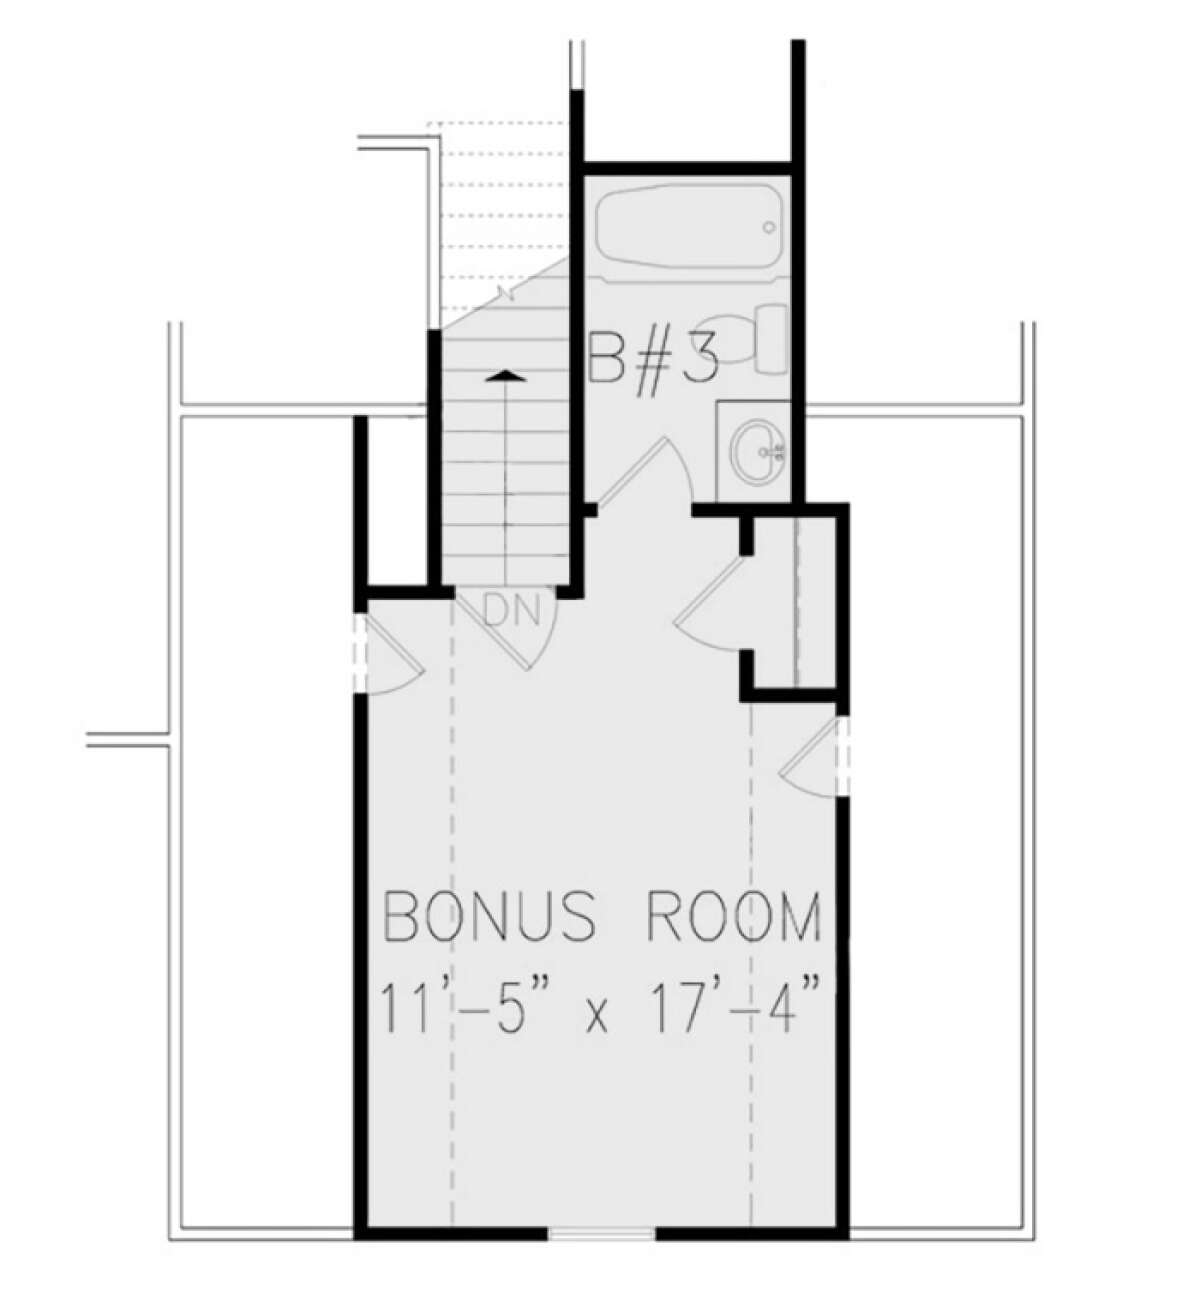 Bonus Room for House Plan #699-00092